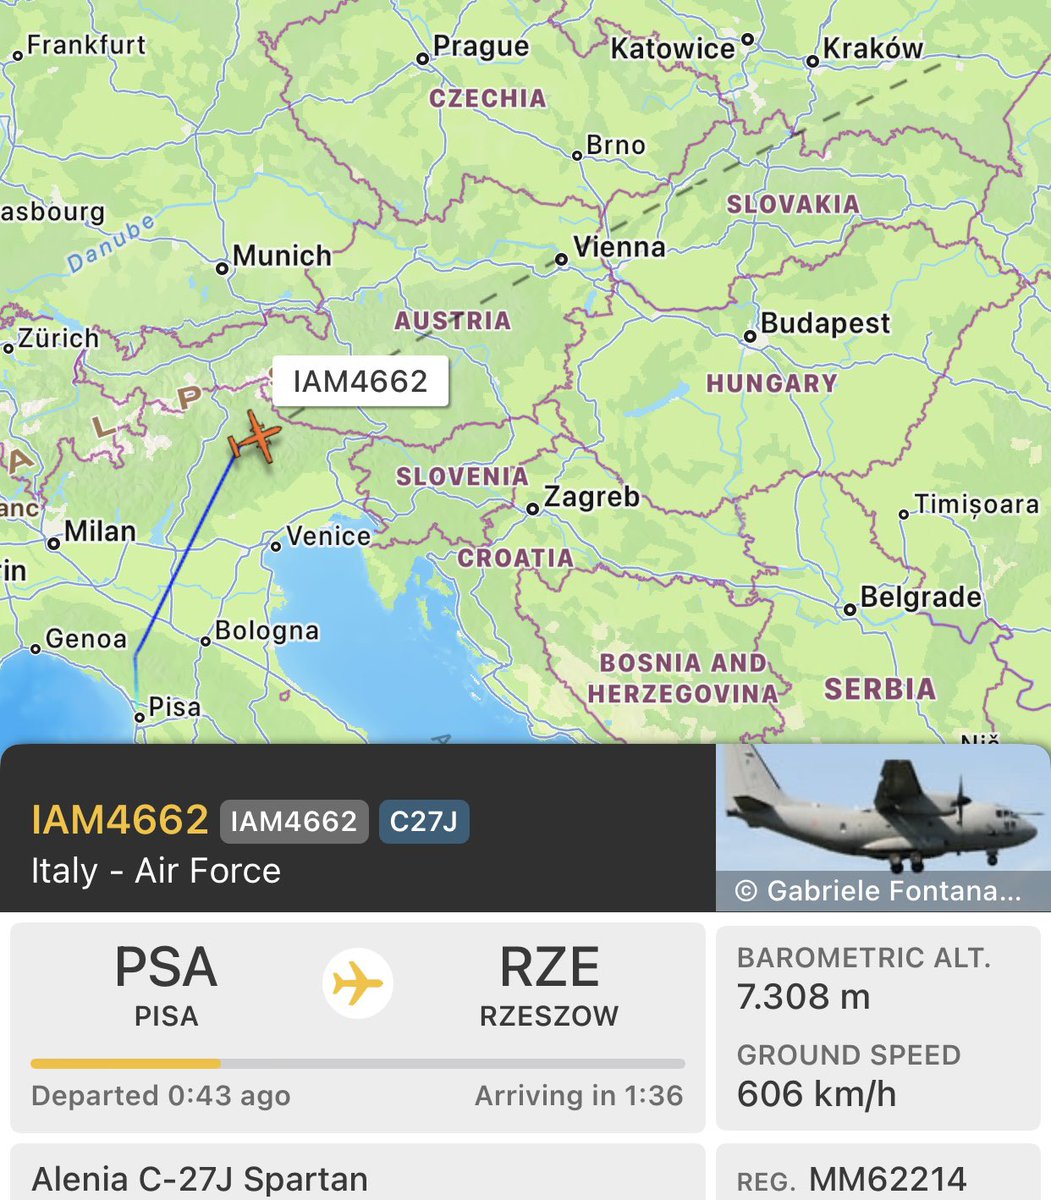 IAM4662 - MM62214 - 33FFBF

Italian C-27J Spartan from Pisa to Rzeszow.